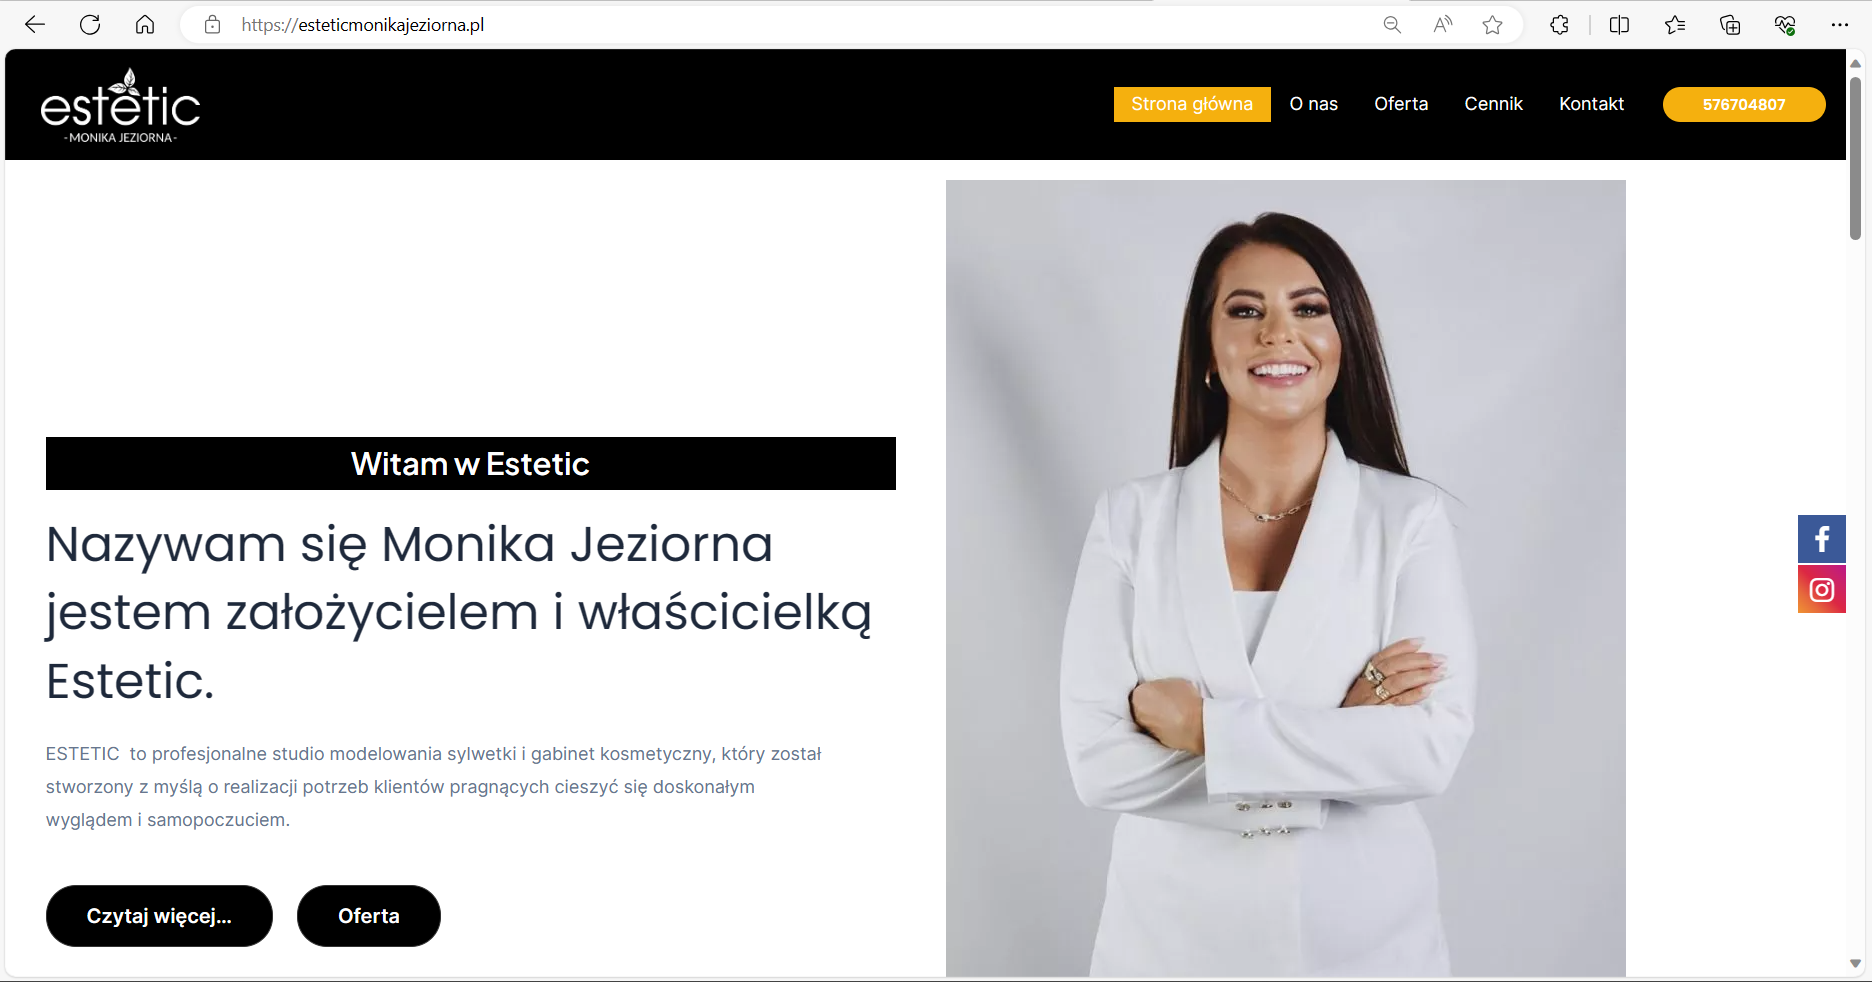 www.esteticmonikajeziorna.pl